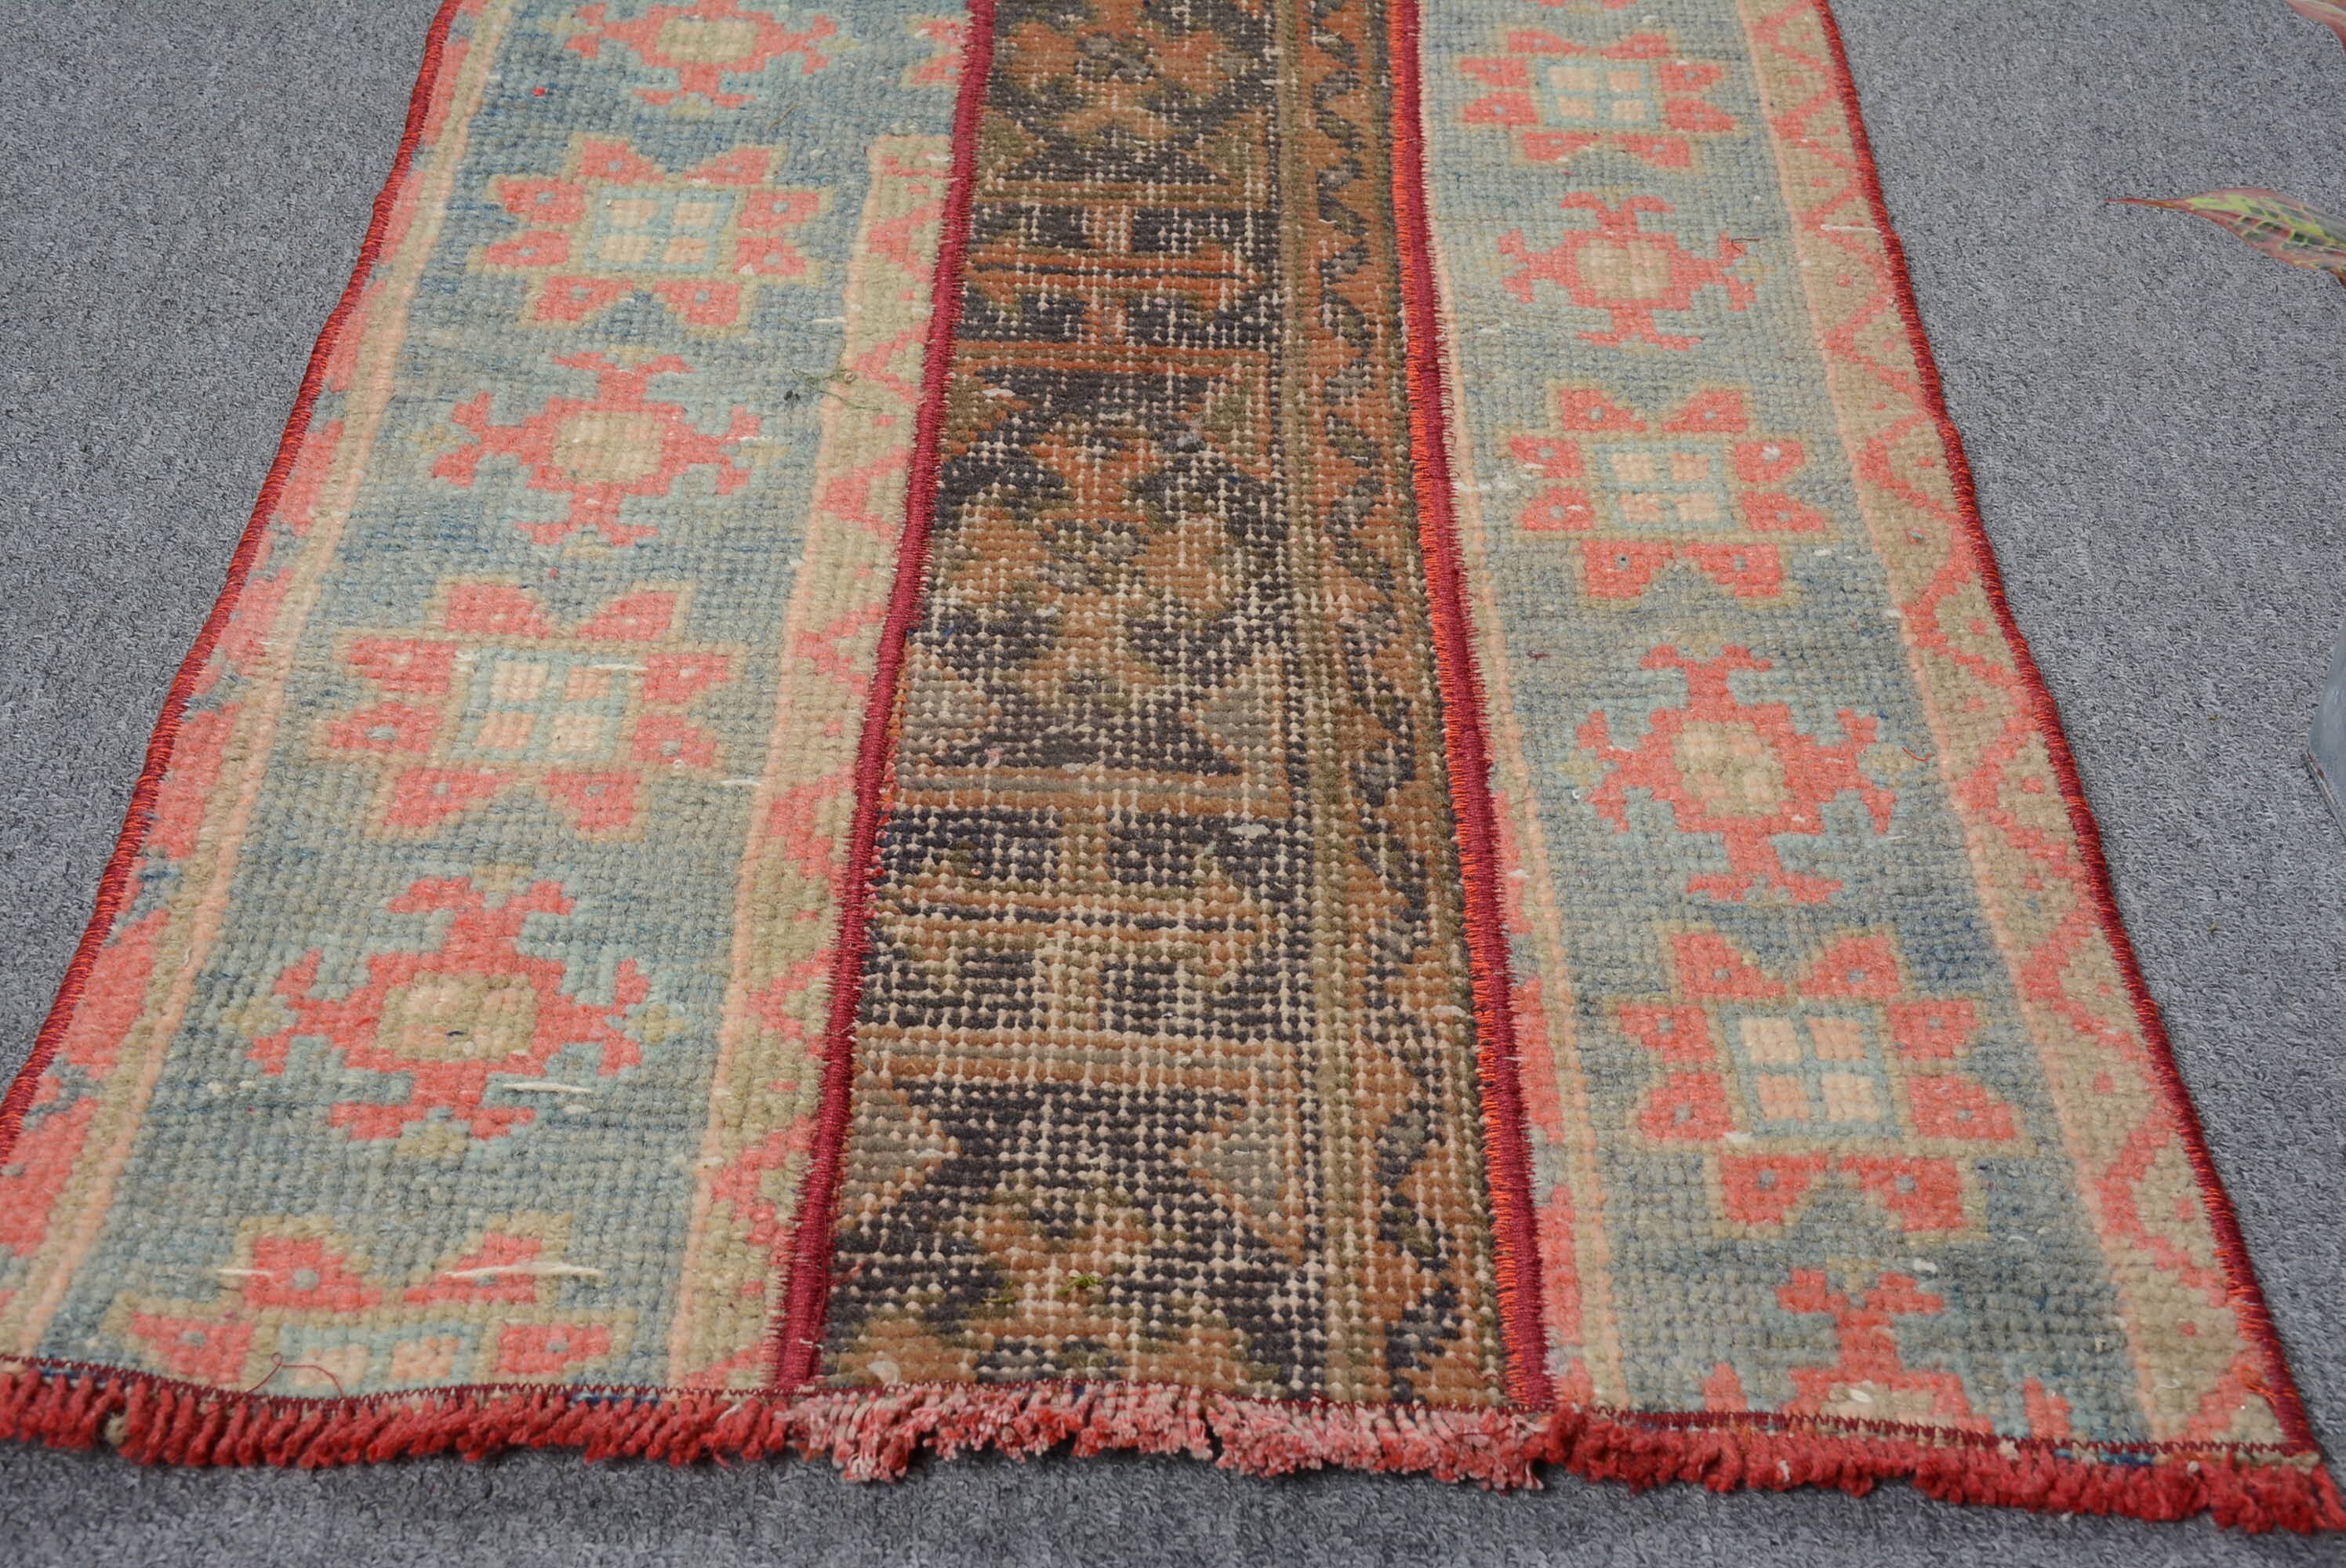 Floor Rug, Turkish Rug, Kitchen Rug, Vintage Rugs, Orange Antique Rug, Bohemian Rug, 1.8x2.8 ft Small Rugs, Door Mat Rug, Anatolian Rug